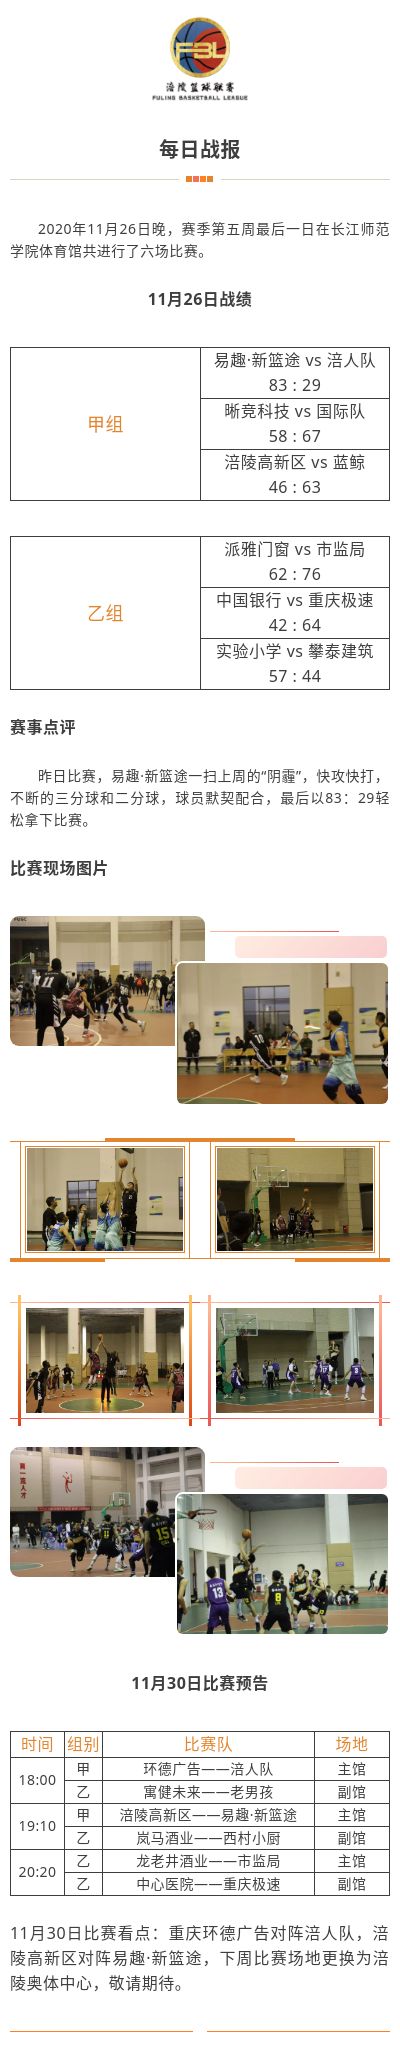 涪陵高新区·涪陵篮球联赛（FBL）2020赛季每日战报11.26